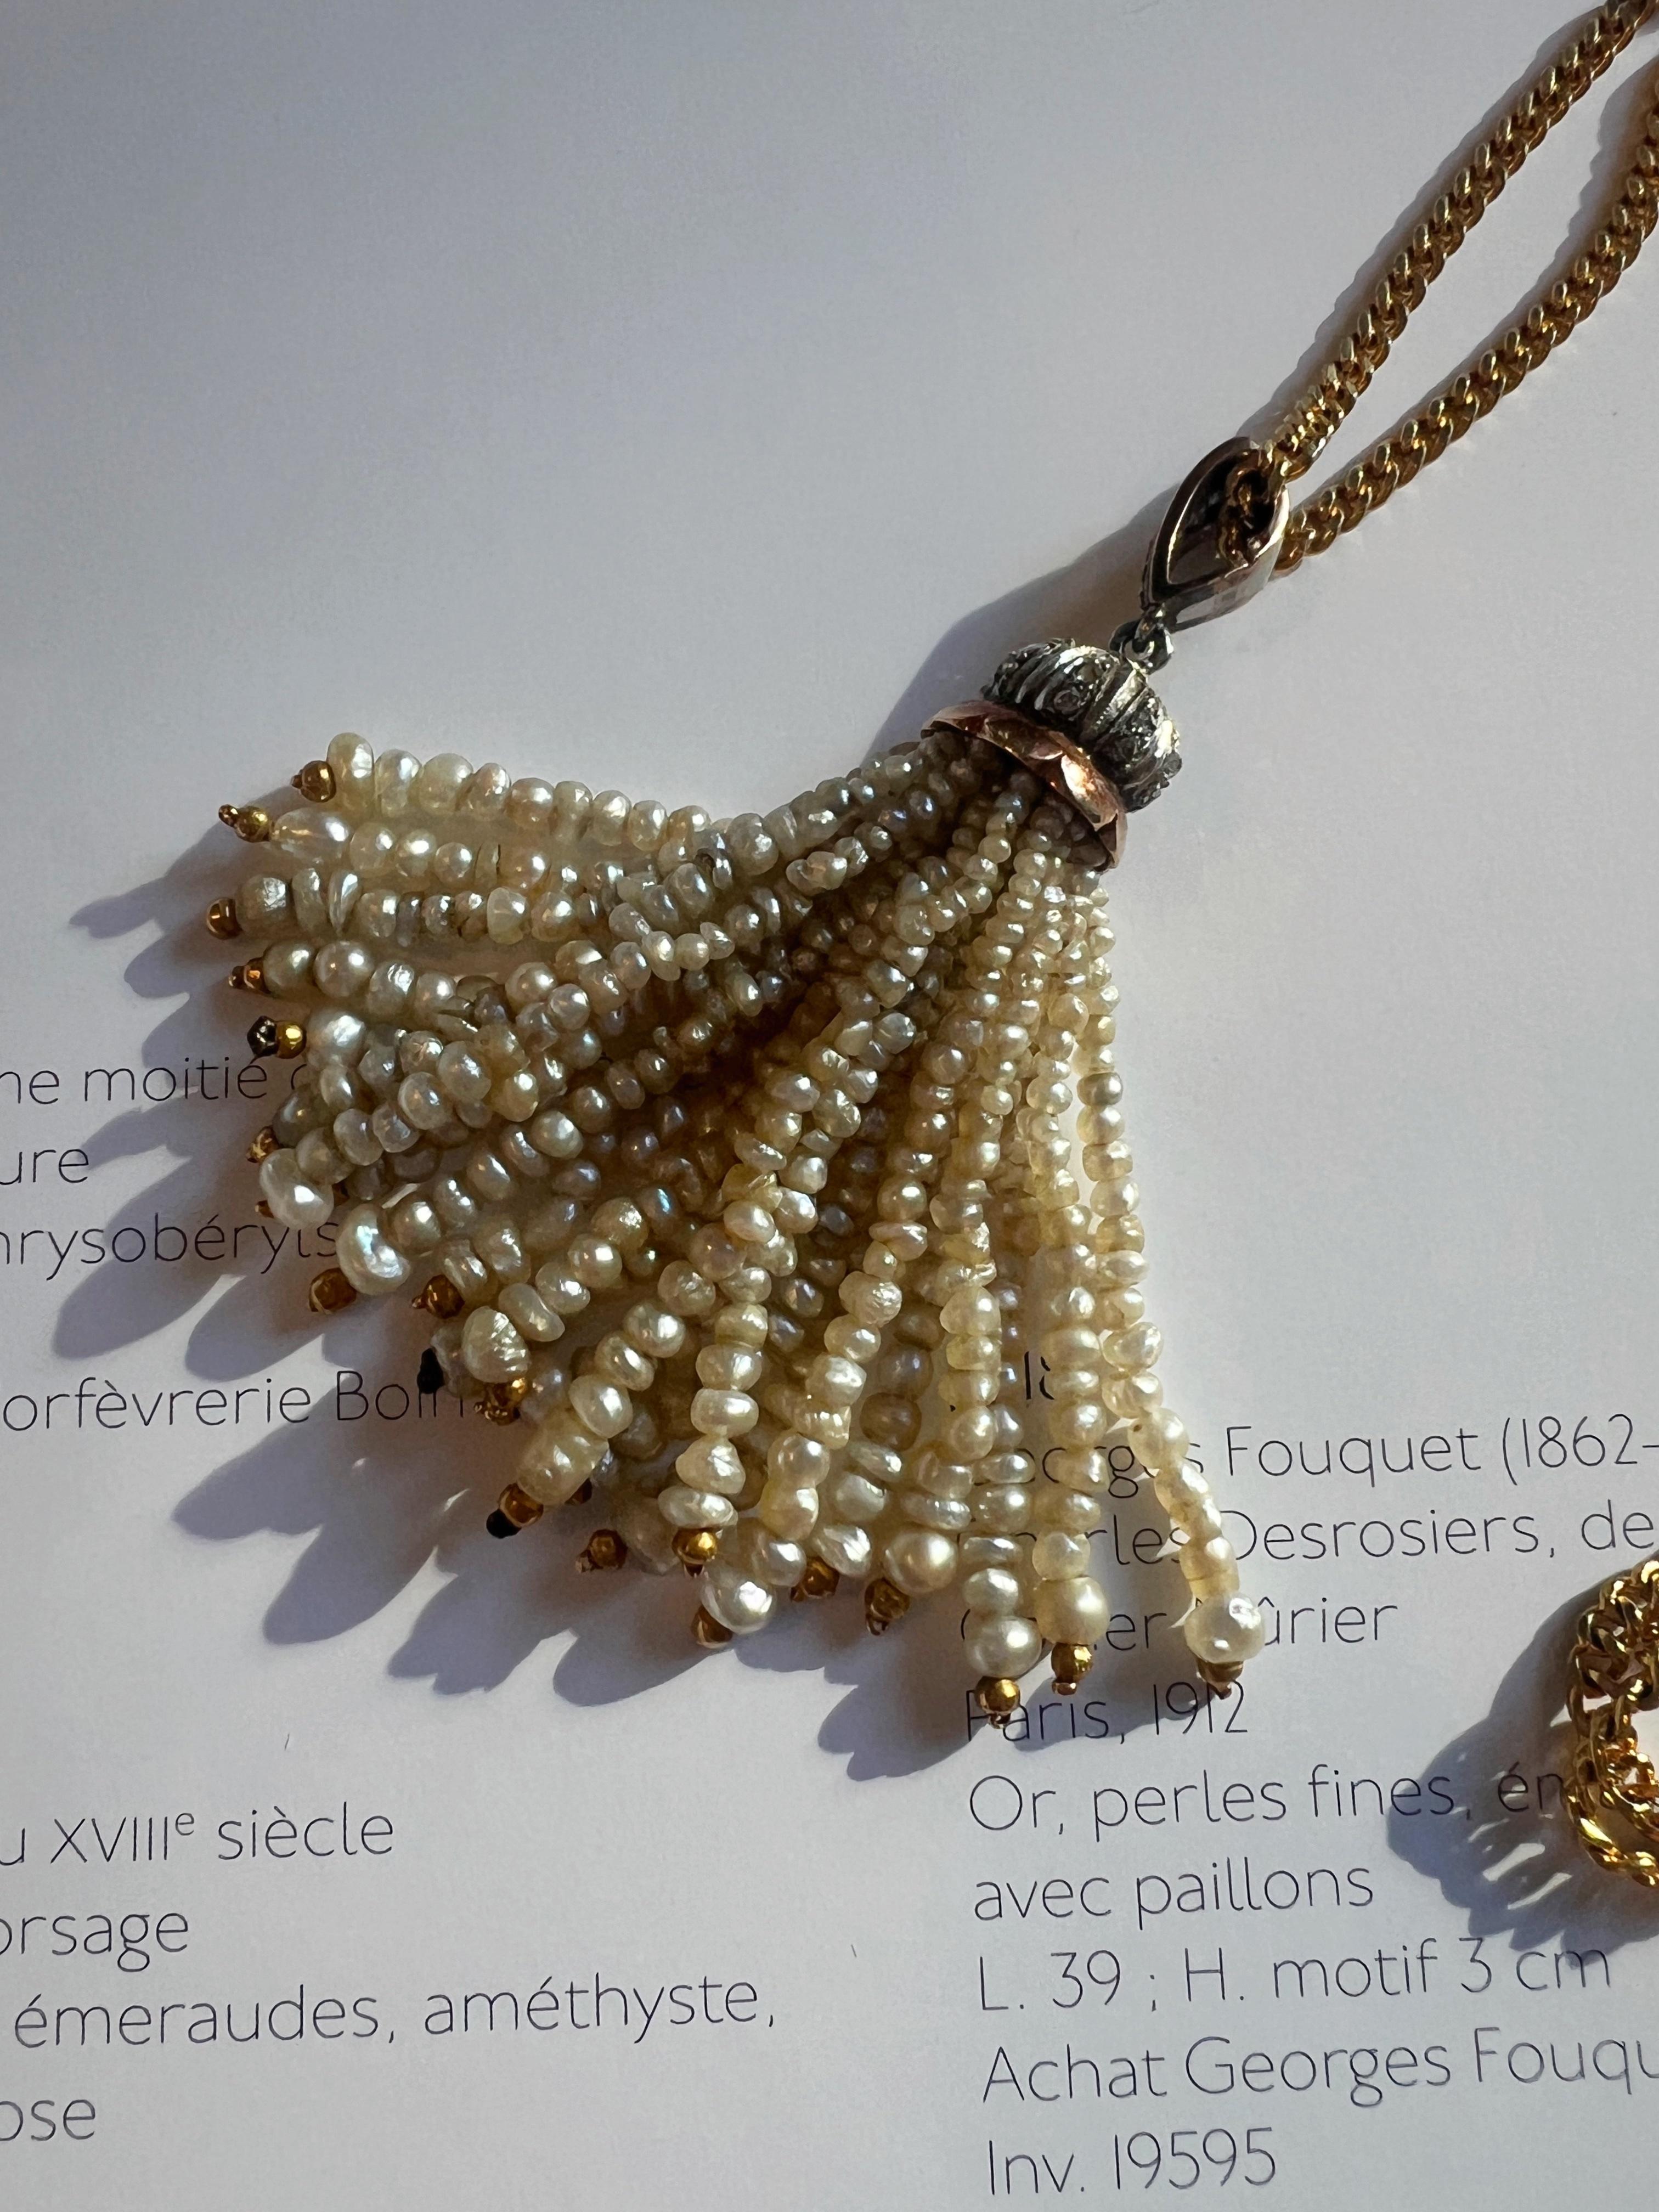 Nous vendons un magnifique pendentif en forme de pampille d'époque Art Déco, composé de 23 rangs de perles blanches naturelles, au-dessus desquelles se trouve le motif incrusté de diamants taillés en rose. Évoquant le glamour et les paillettes des